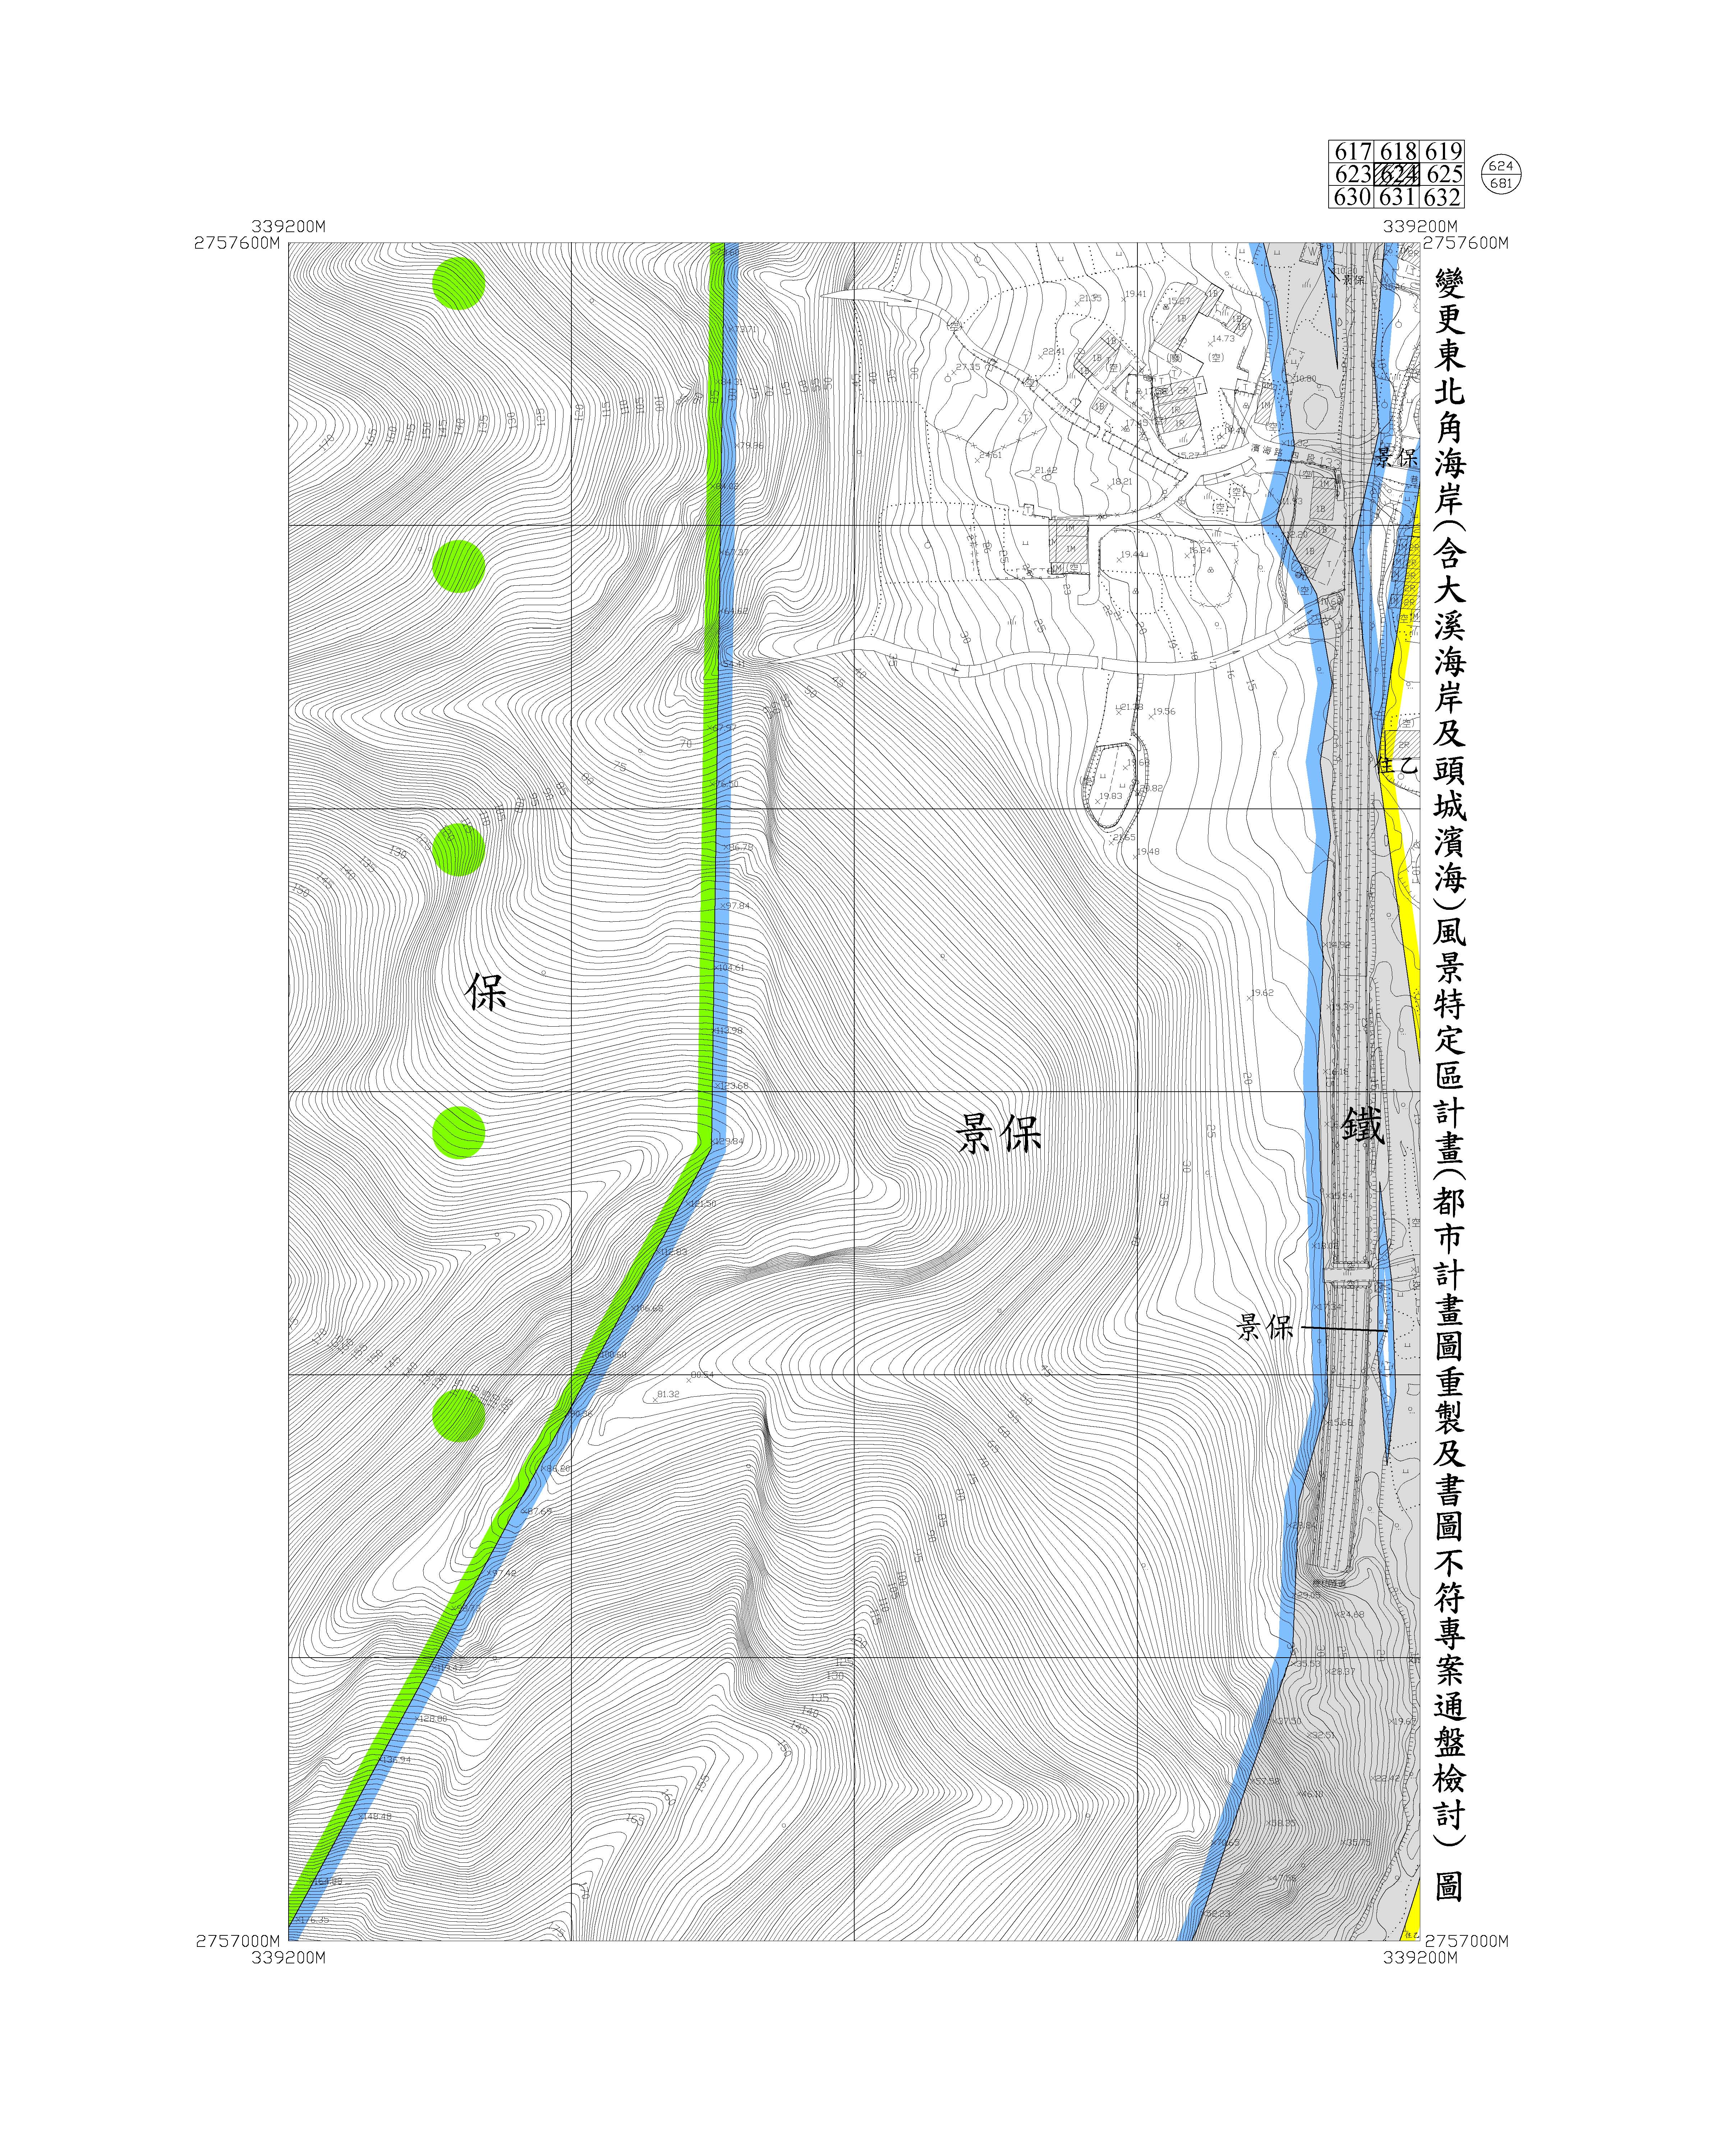 含大溪海岸及頭城濱海都市計畫圖重製及書圖不符專案通盤檢討圖資633